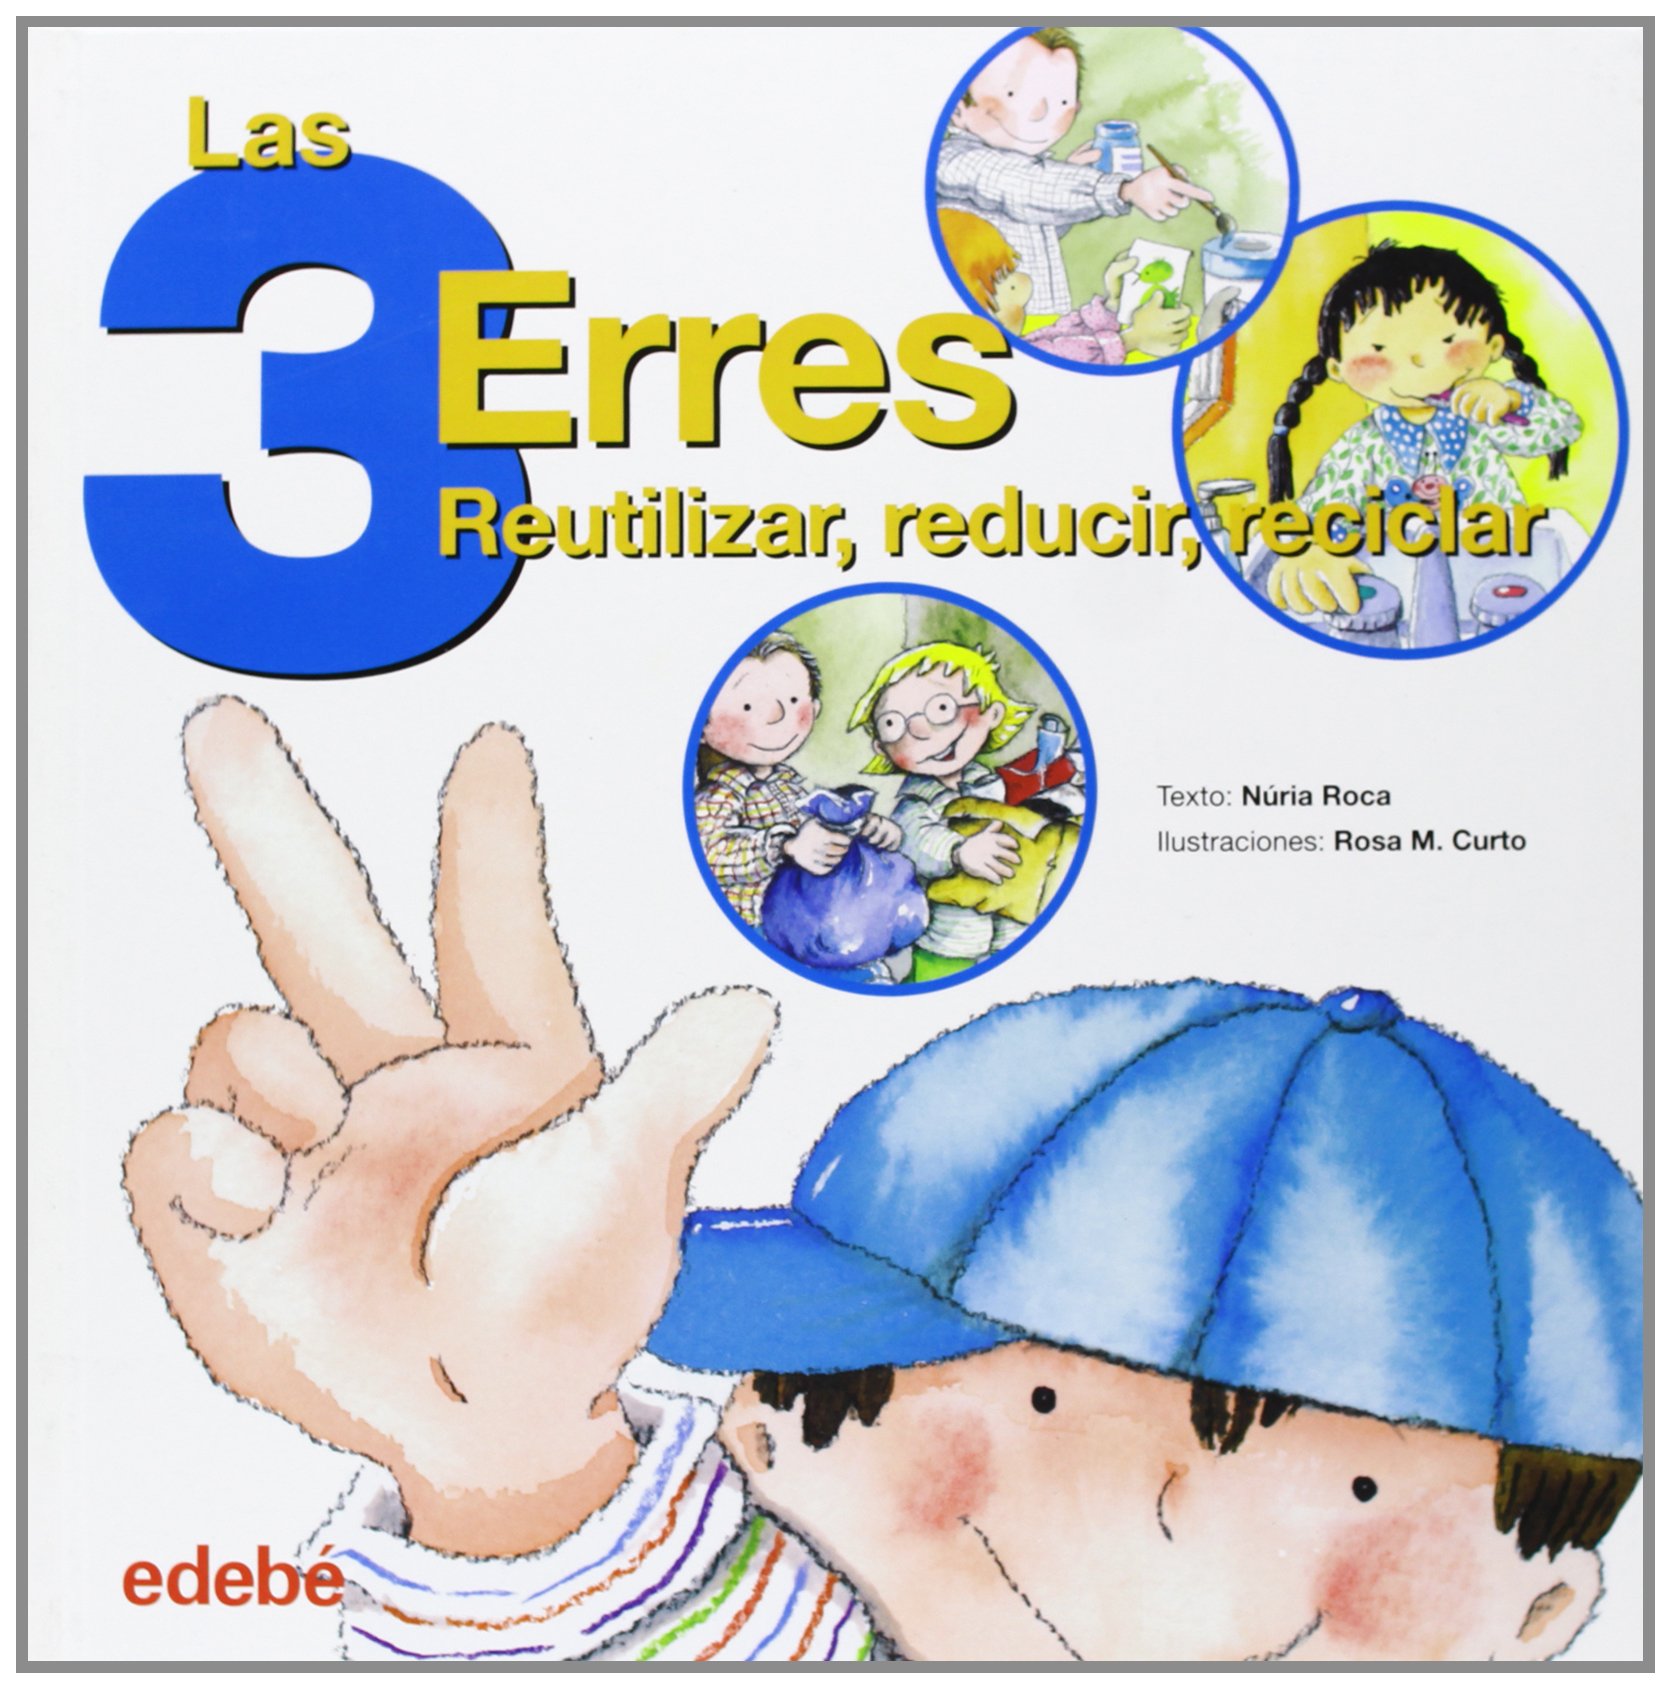 Libro: Las tres erres: Reutilizar, reducir, reciclar por Núria Roca